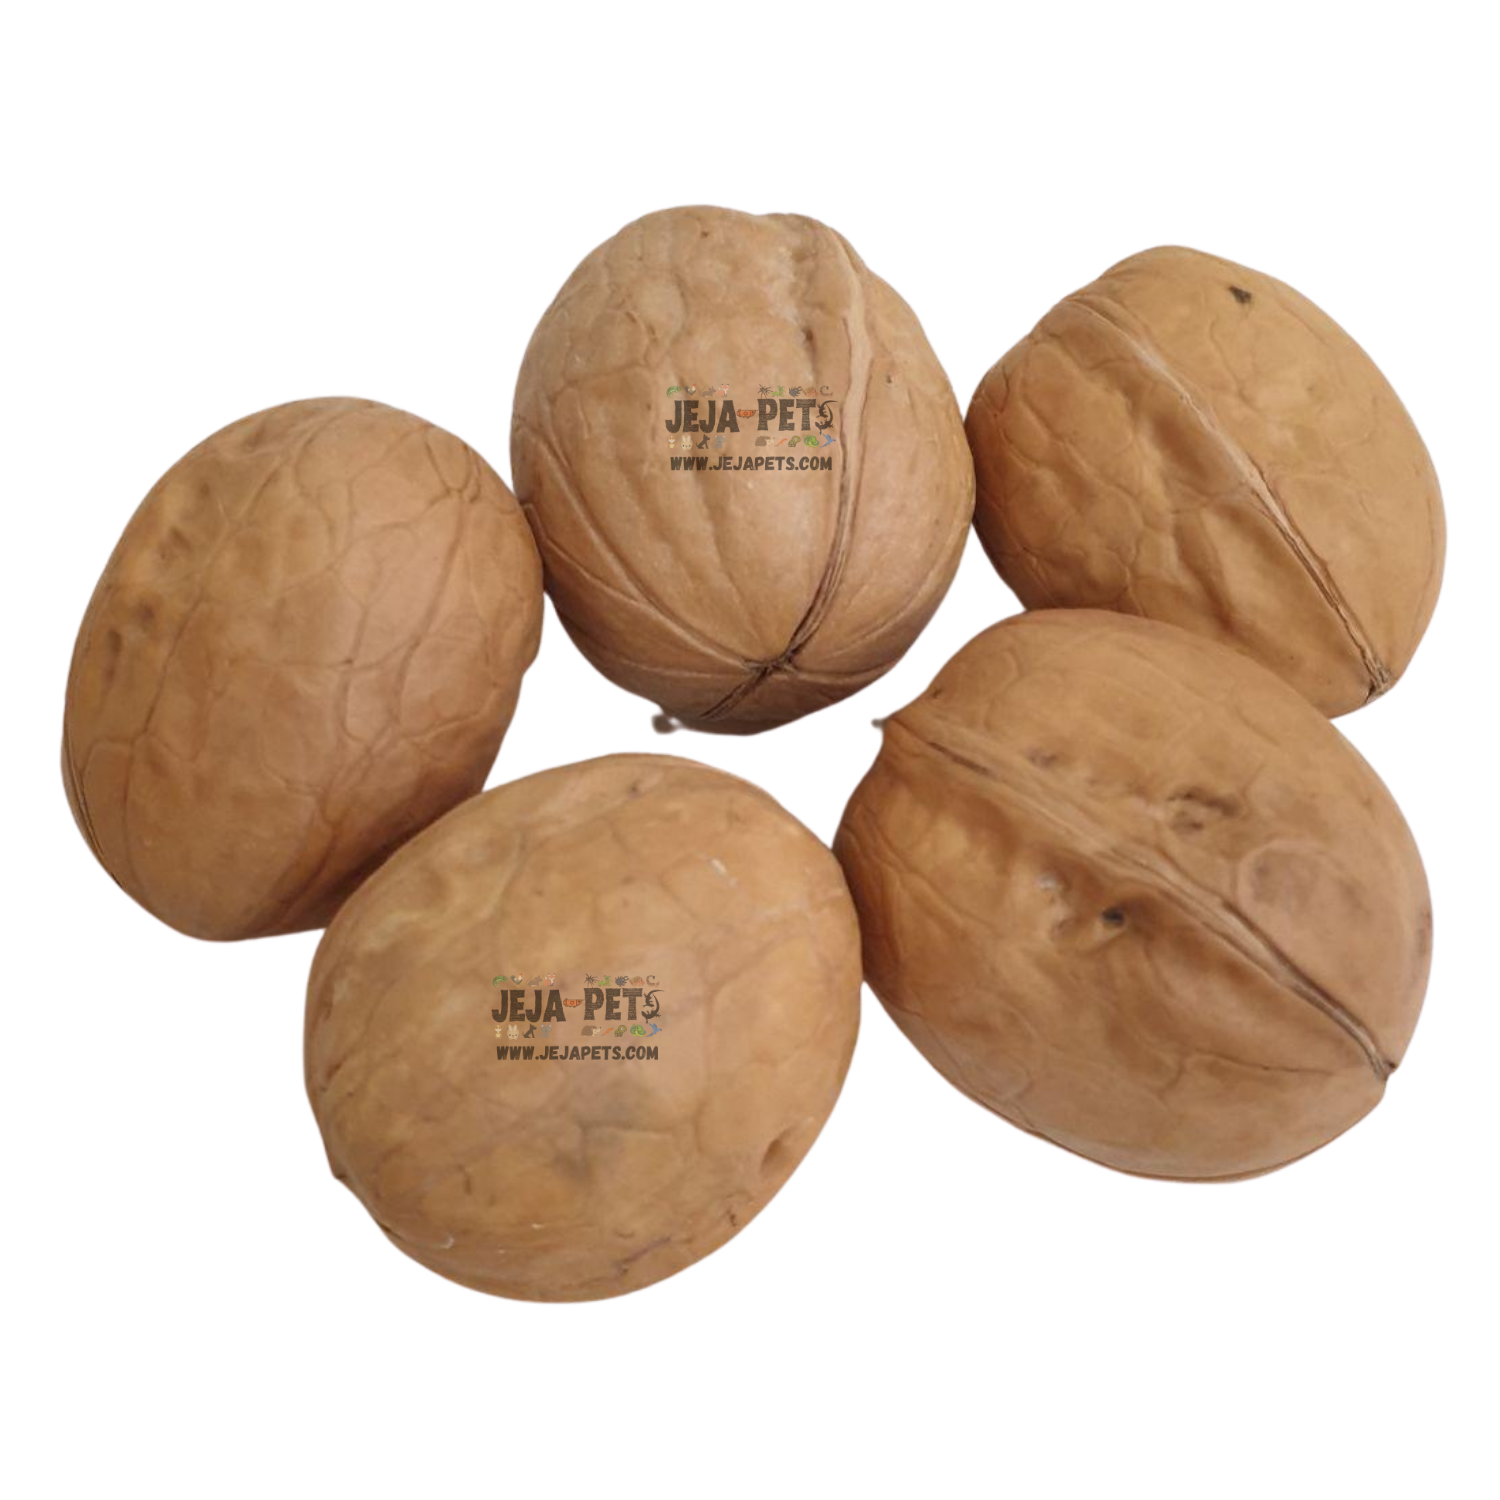 Jeja Pets Raw Shelled Walnuts - 200g